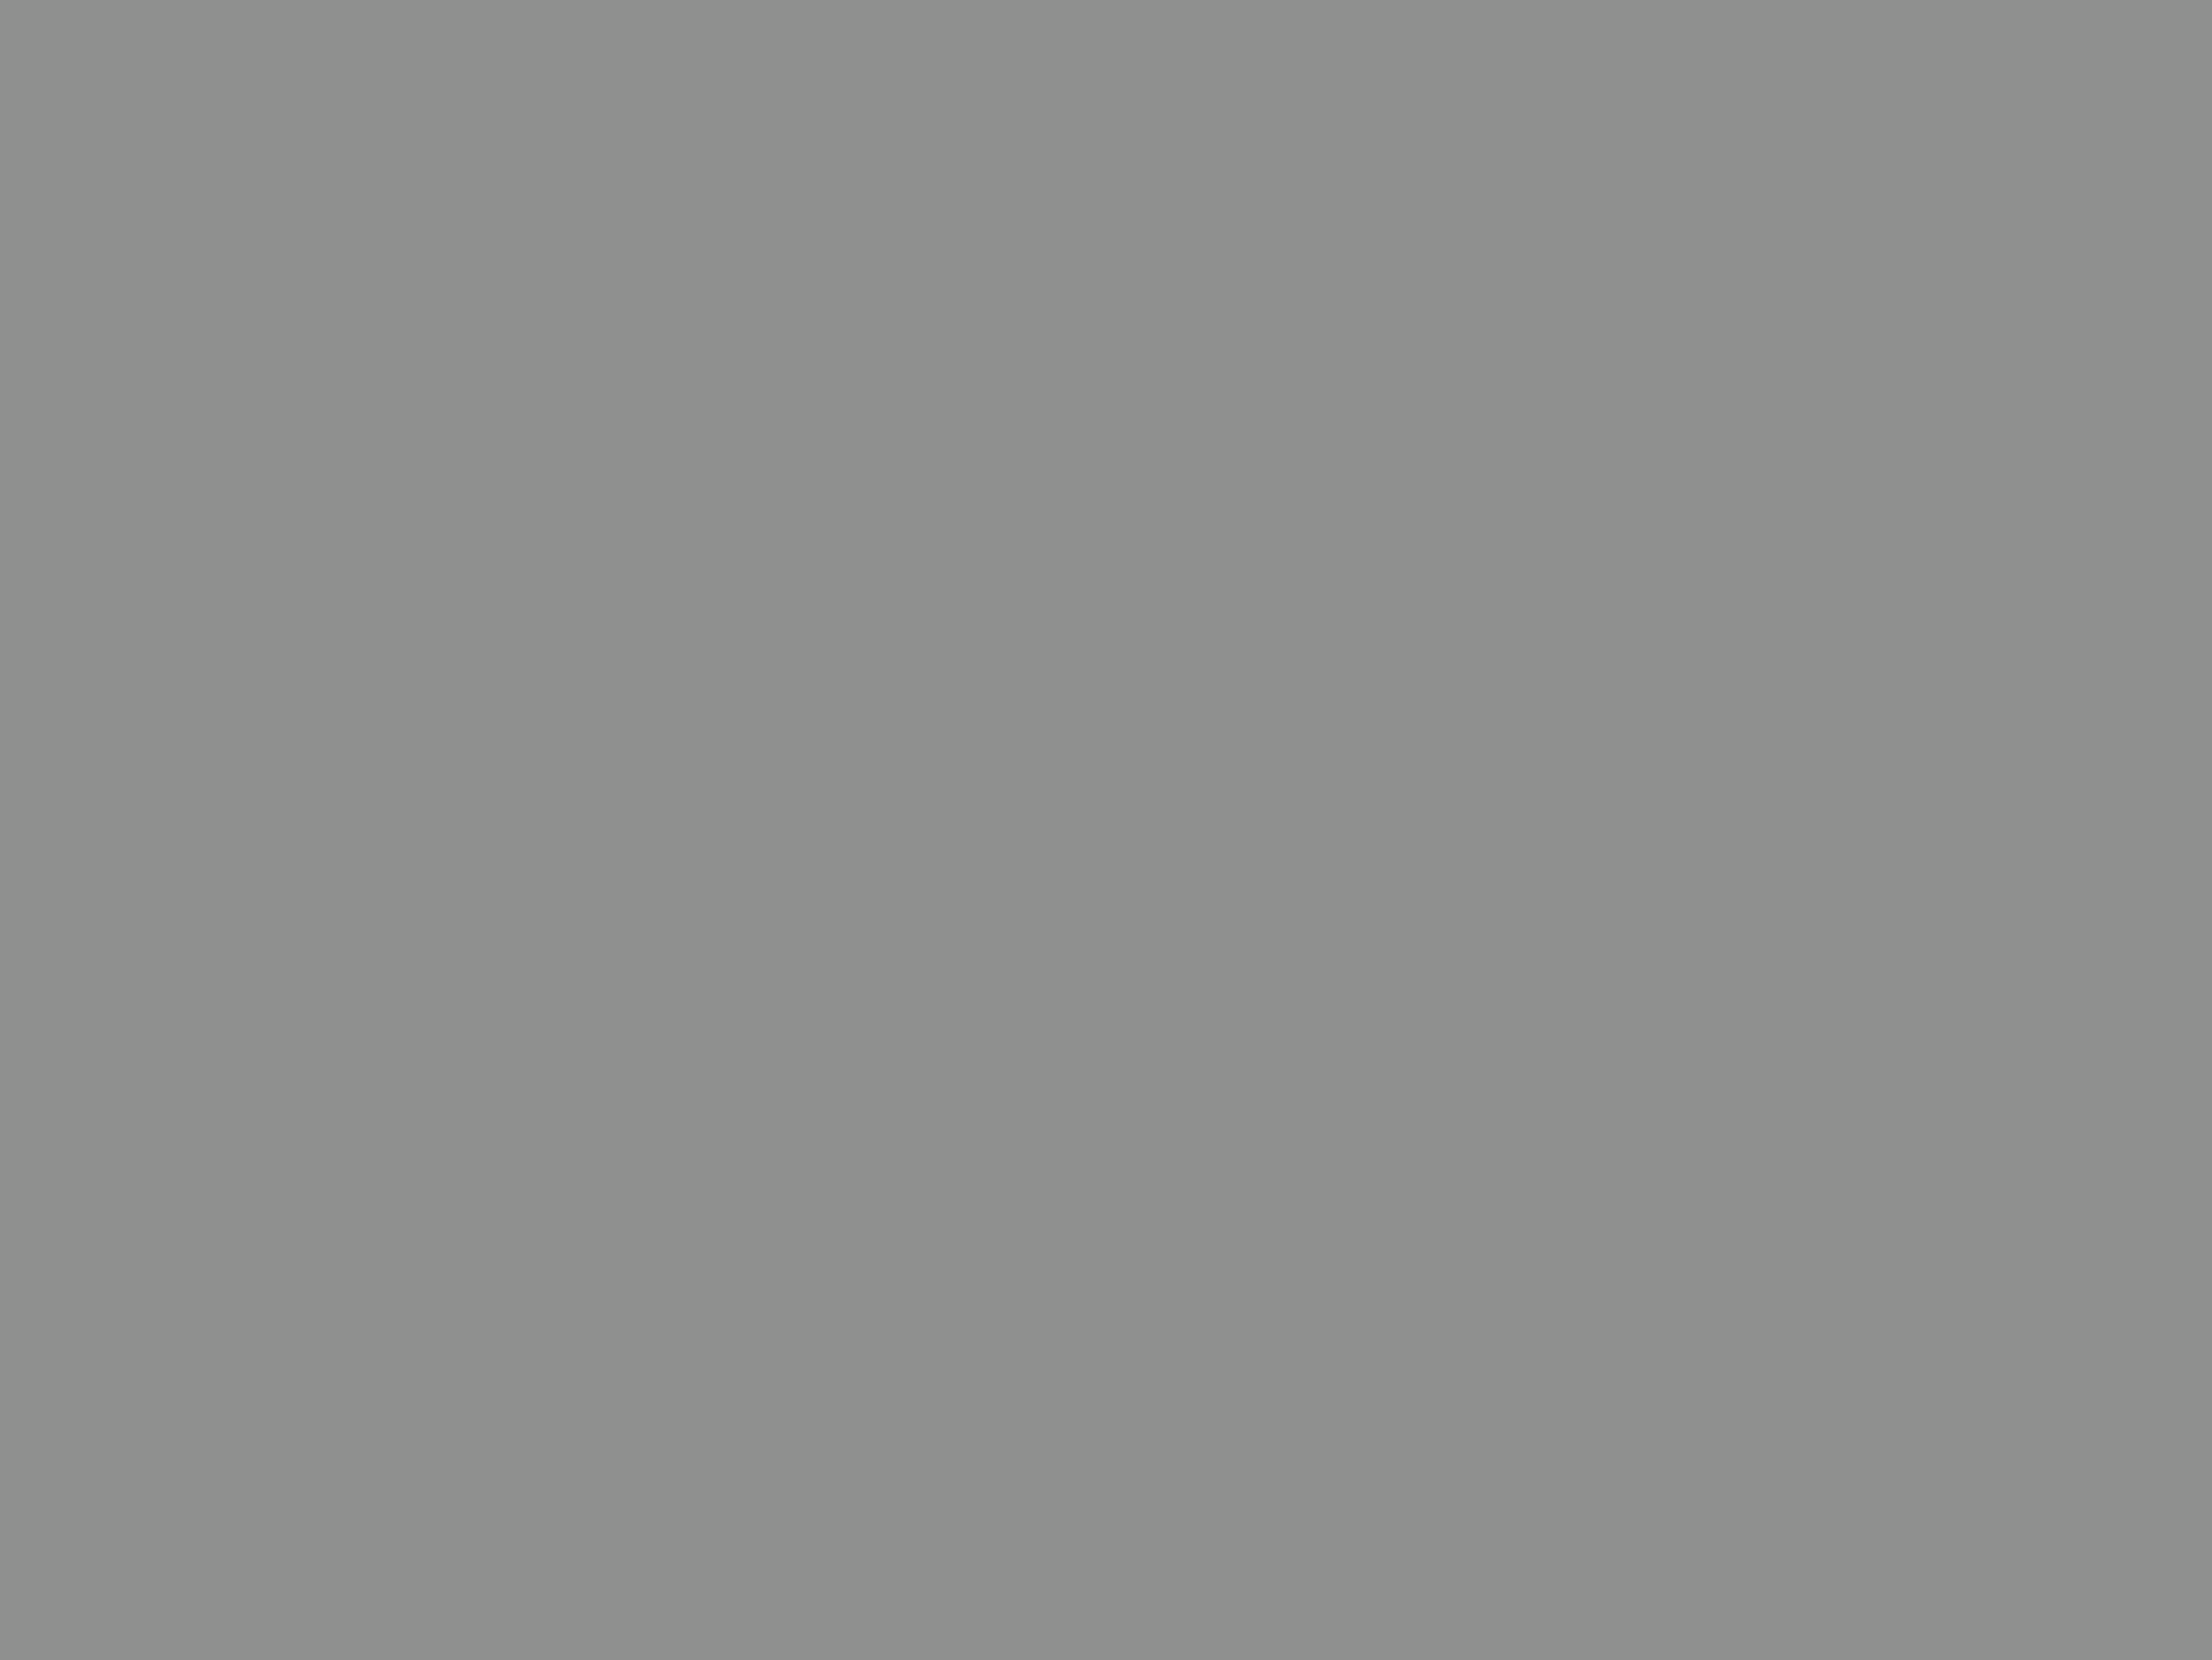 Советский и российский государственный, политический, партийный и общественный деятель Михаил Горбачев. Москва, 2005 год. Фотография: Дмитрий Копылов / ИТАР-ТАСС